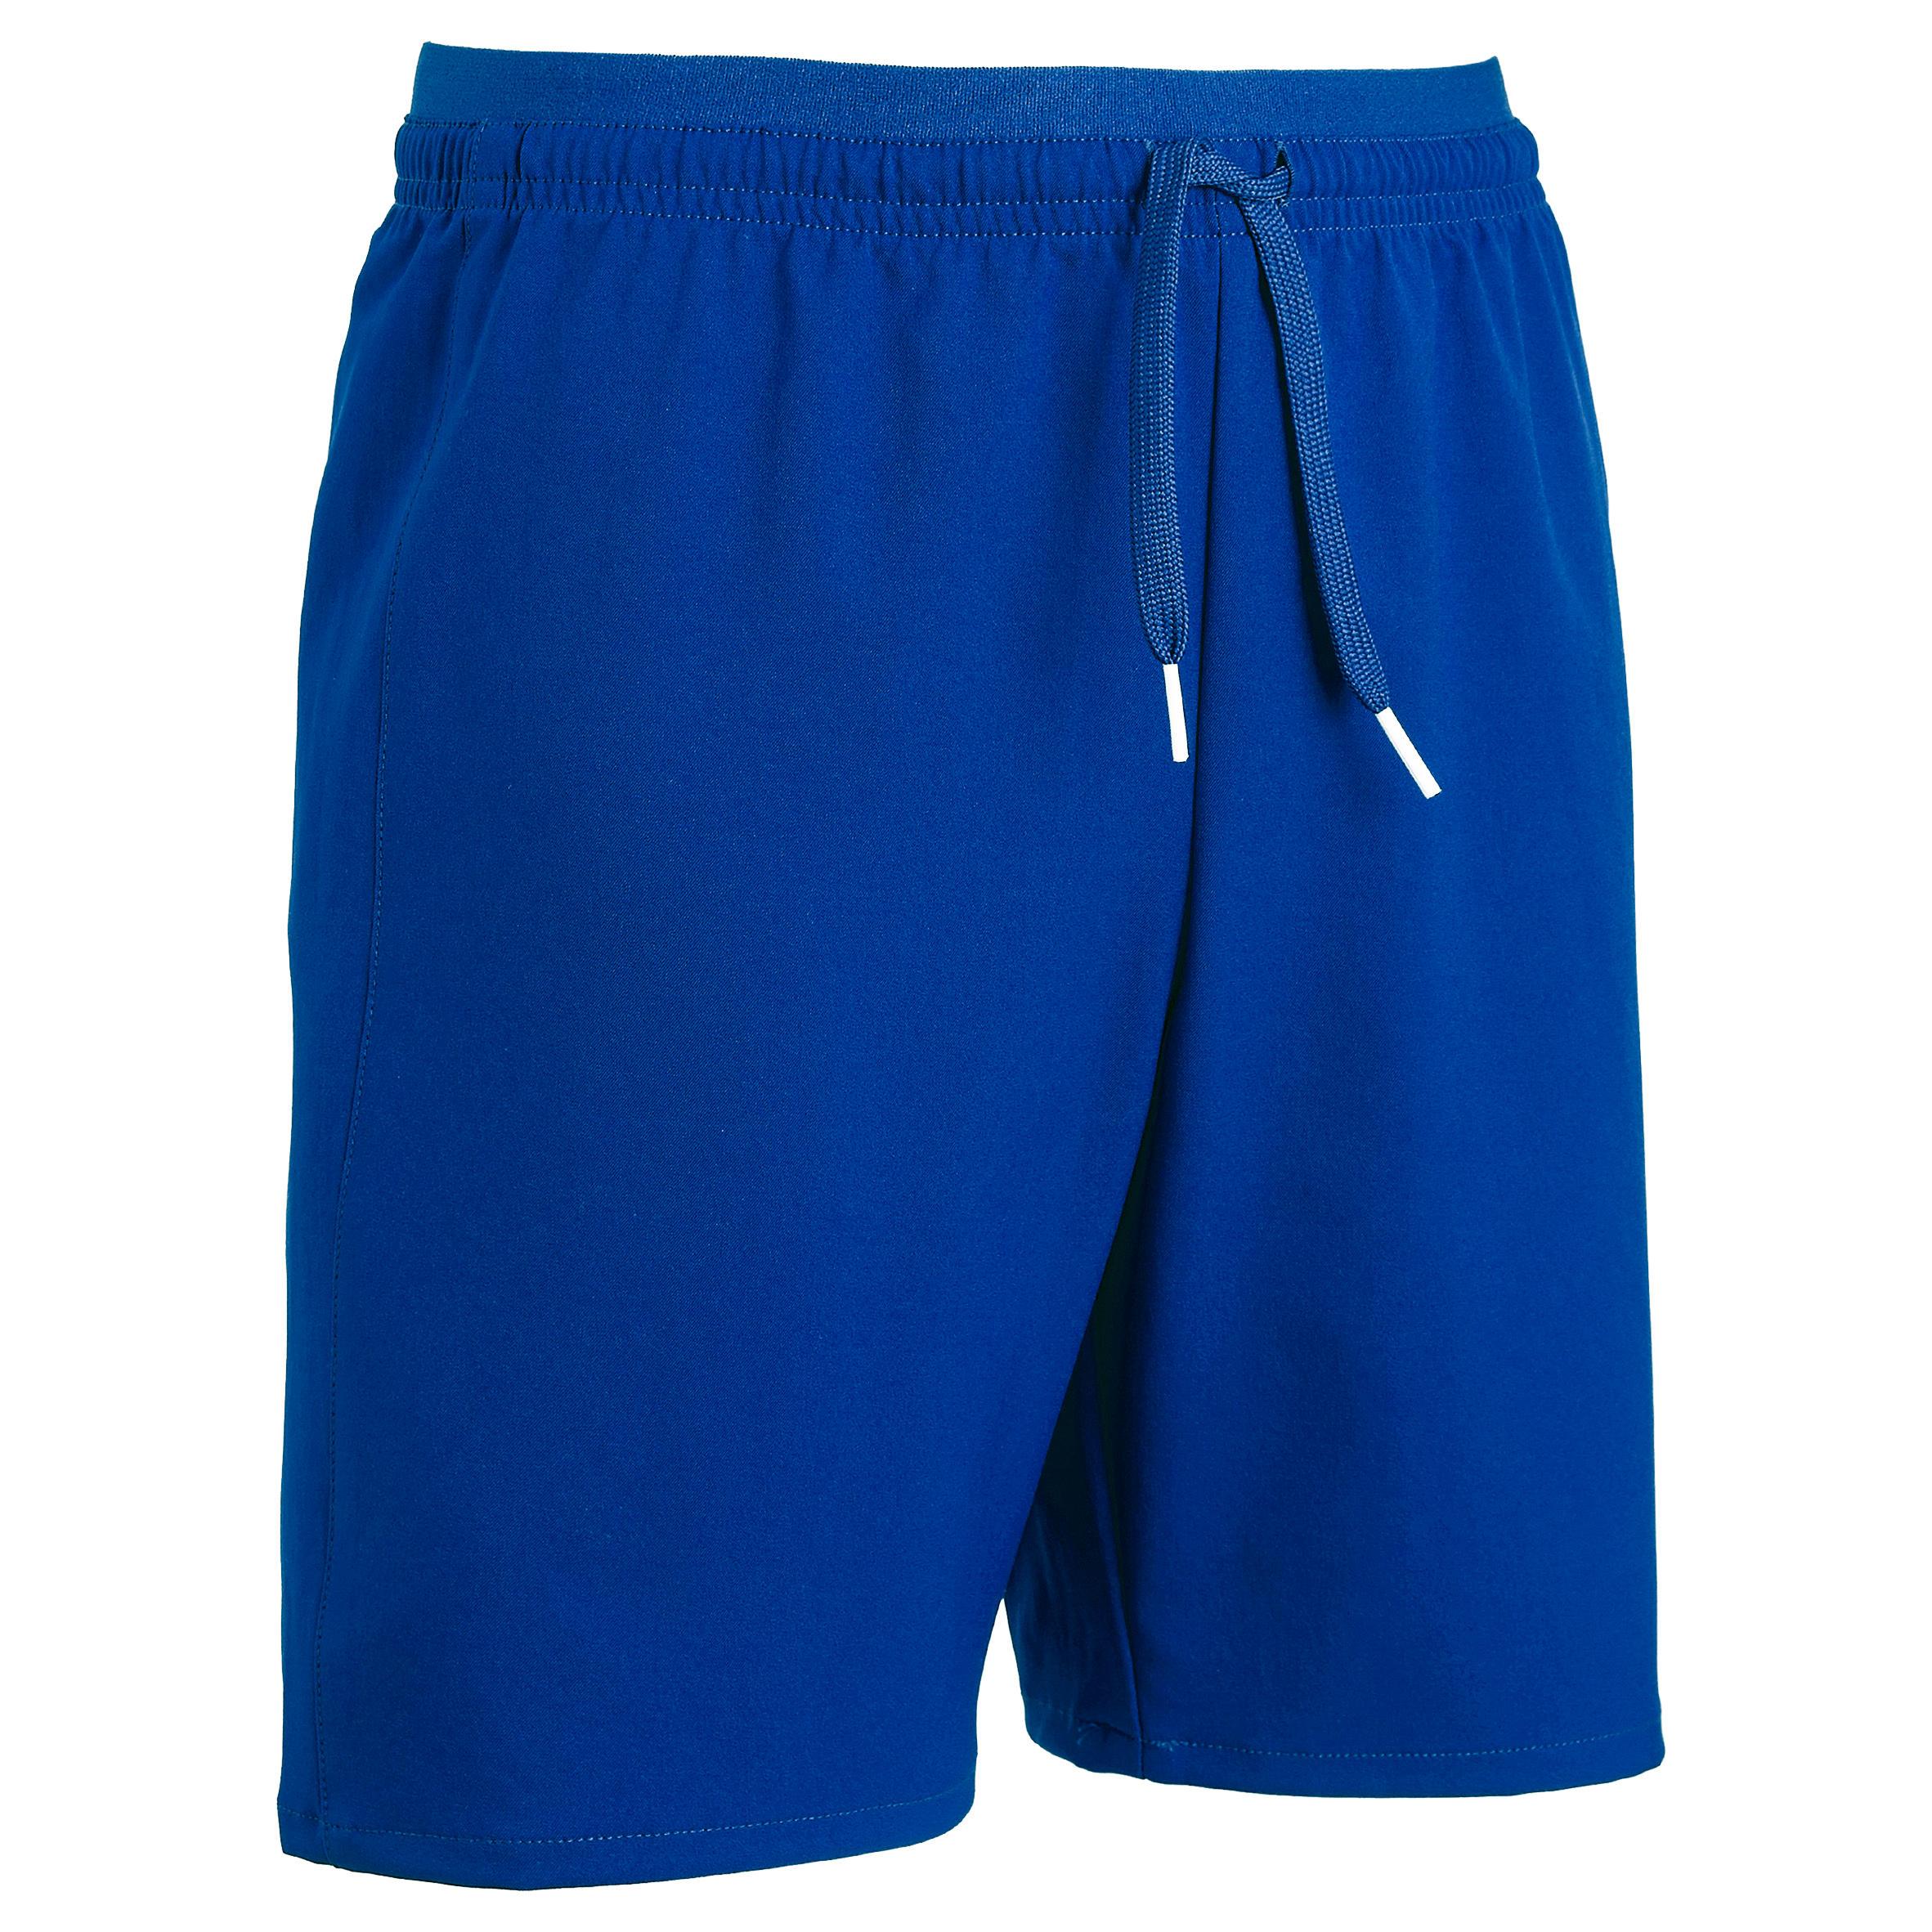 [ด่วน!! โปรโมชั่นมีจำนวนจำกัด] กางเกงฟุตบอลขาสั้นสำหรับเด็กรุ่น F500 (สีน้ำเงิน) สำหรับ ฟุตบอล